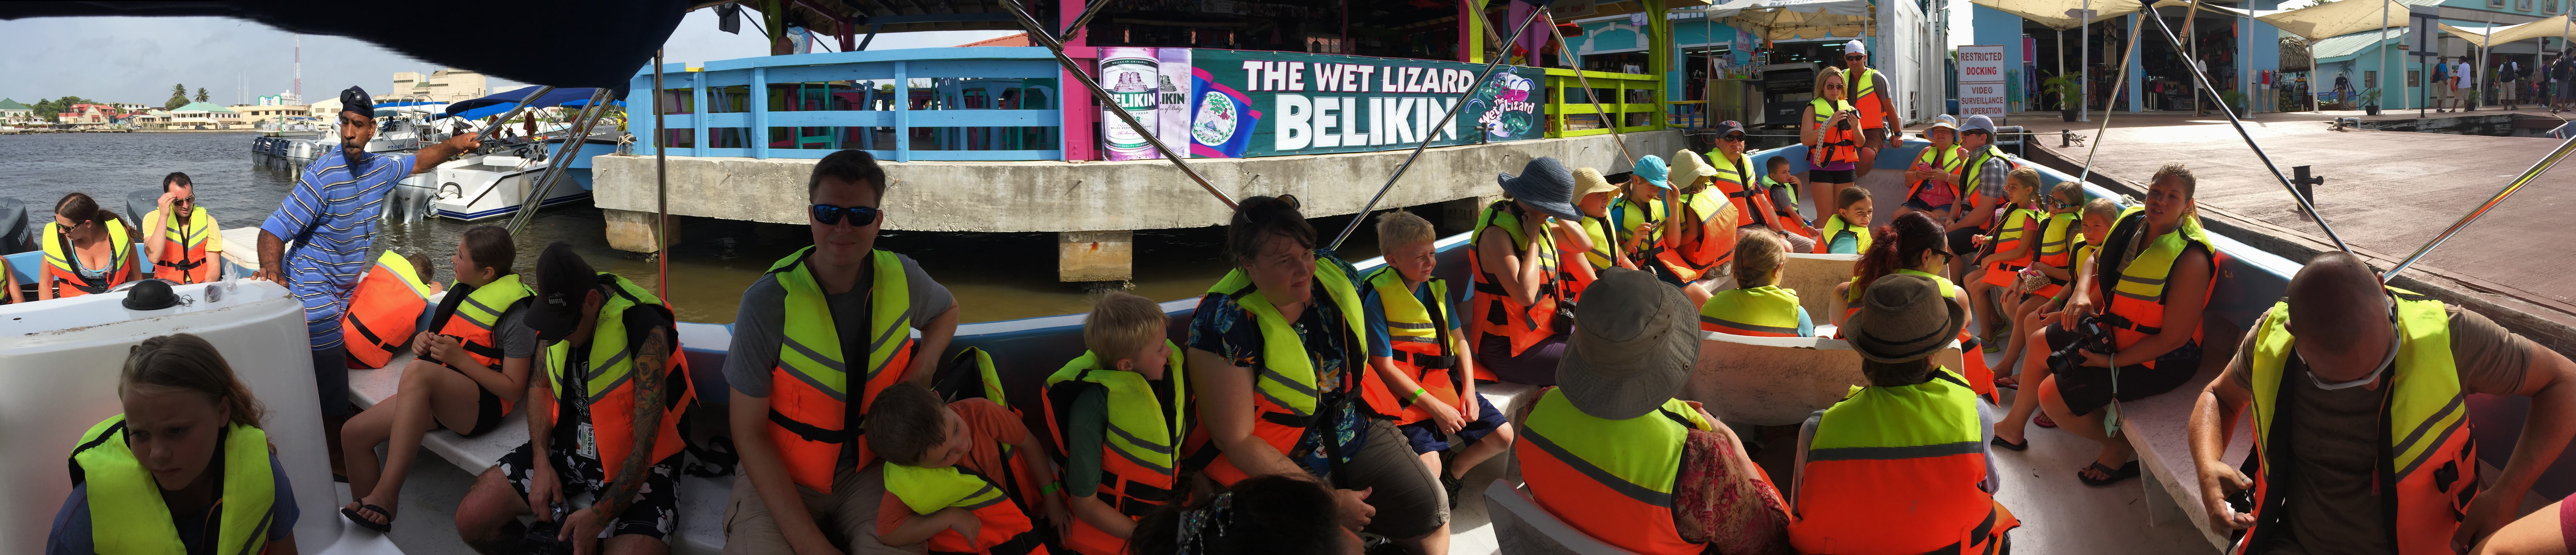 Belize boat tour